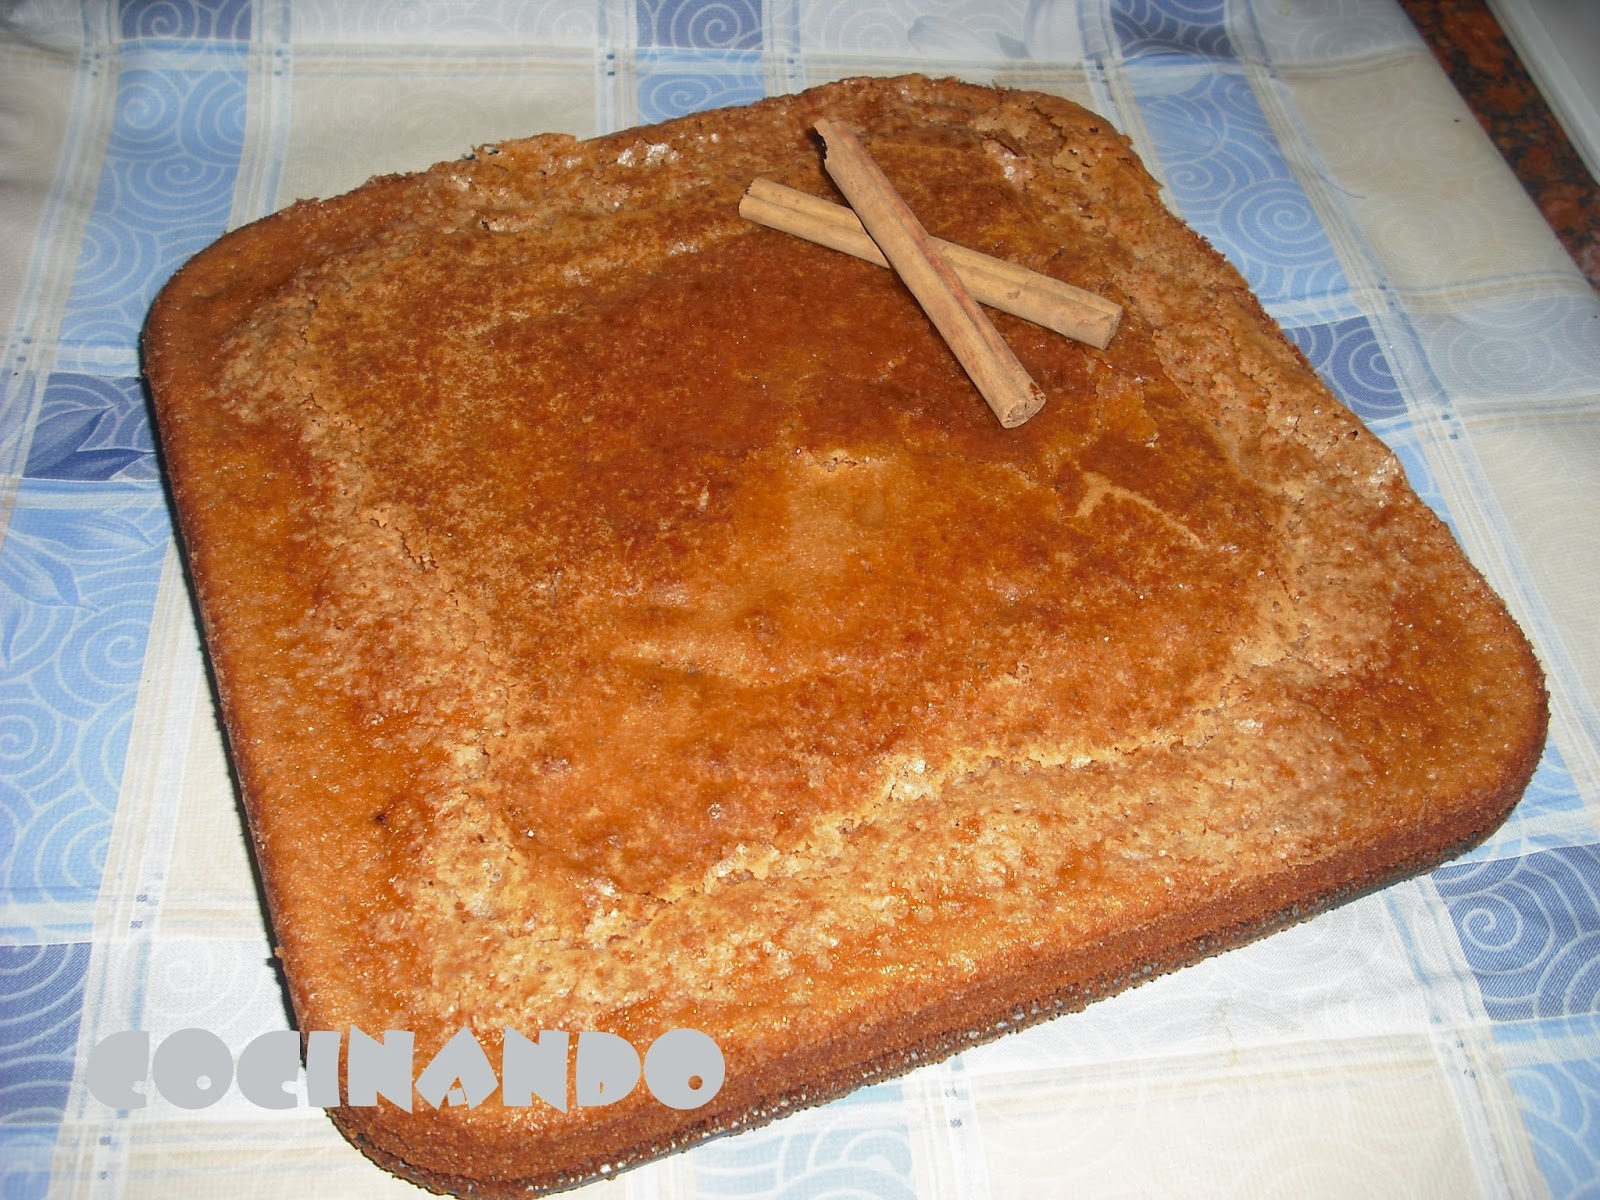 Torta De Manzana Y Canela
